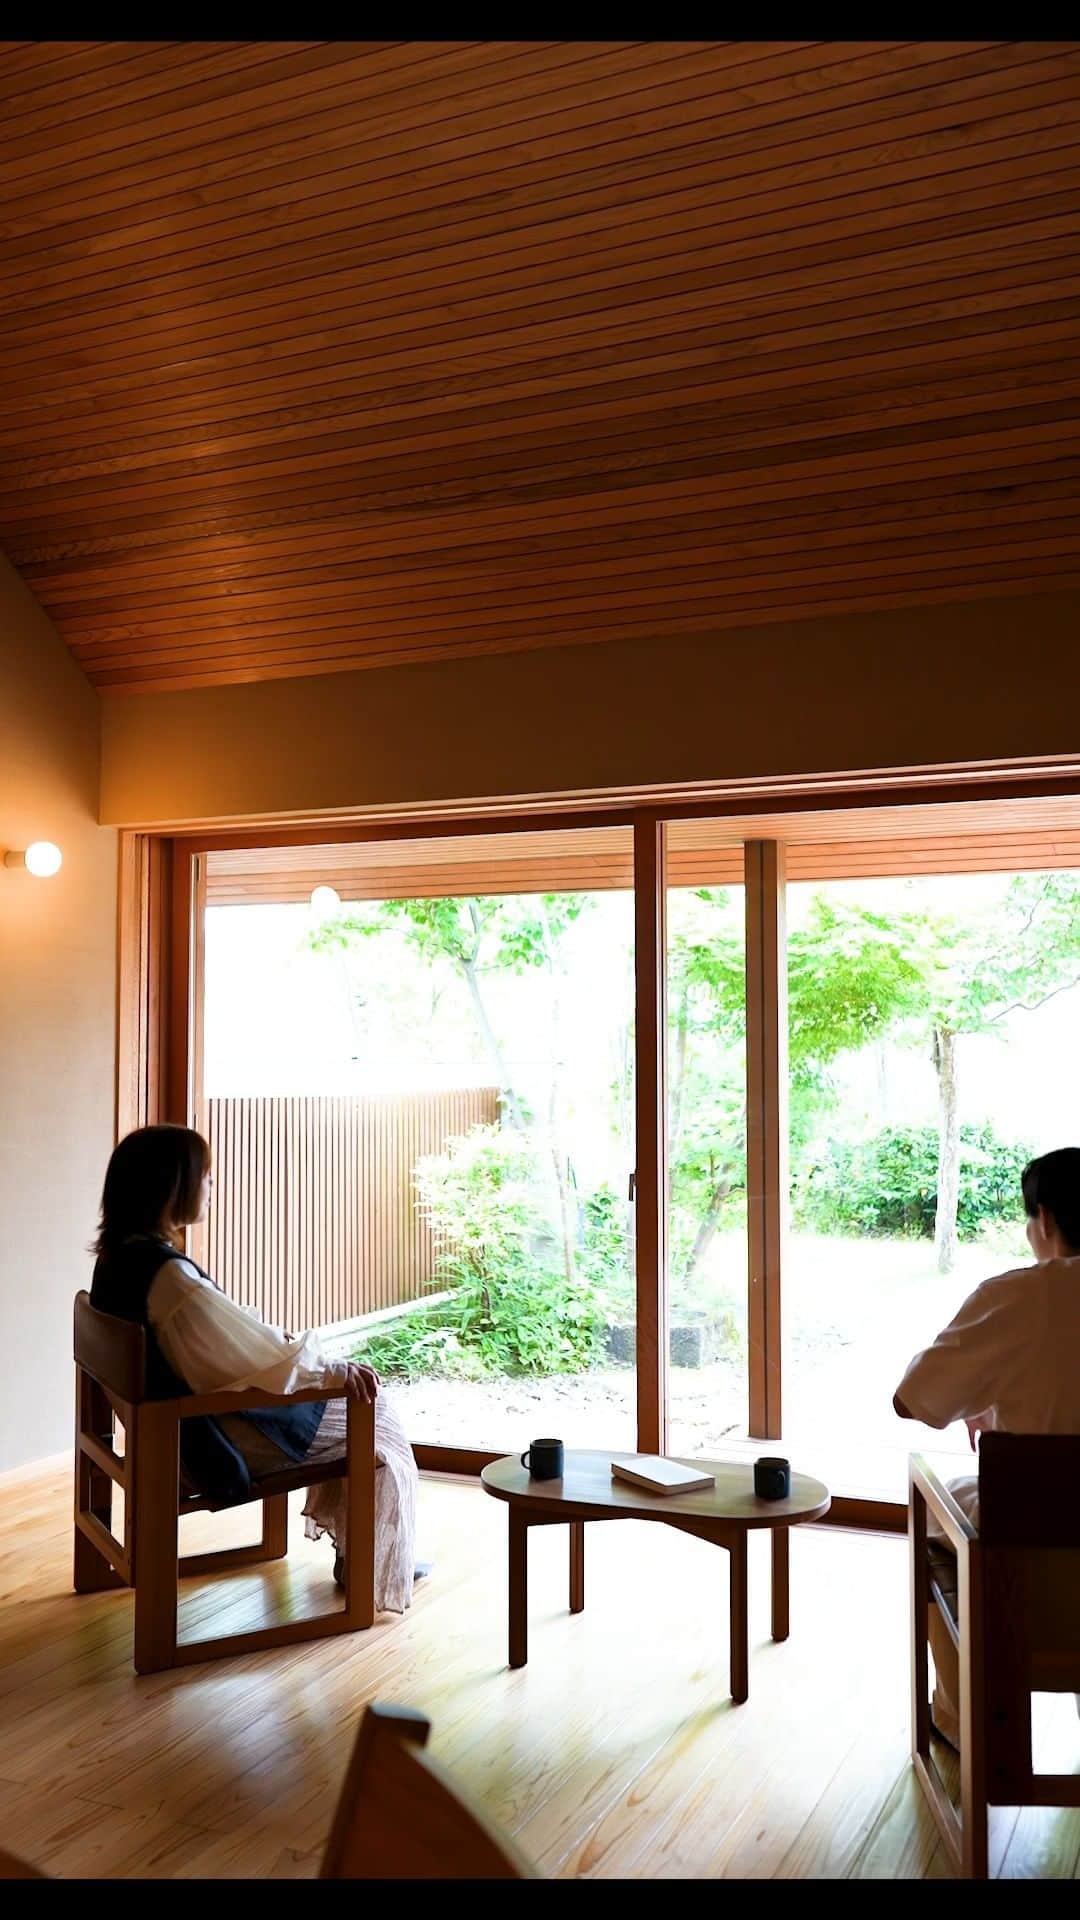 ミヤワキホームのインスタグラム：「優しい光差し込む癒しの空間、そして開放リビングのある住宅展示場「高岡の家 もみじ」です。  日本の現代住宅設計を牽引する建築家の伊礼智先生に設計・監修をしていただきました。  高い設計力と熟練した職人の技術をカタチにした家です。  人が育つ場として本当に豊かな空間とはなにかを見つめ直し、自然素材をいかして、小さくても上質な暮らしのできる家をめざしました。 －－－－－－－－－－－－－－－－－－－－－－－ ご見学は随時ご予約受付中です！  ➭➭➭ @miyawakihome 各時間１組限定 富山県高岡市佐野1400-1(ミヤワキホーム本社横)  #家づくり に役立つ情報も定期的に更新中です！ －－－－－－－－－－－－－－－－－－－－－－－ #ルームツアー #ルームツアー動画 #住宅展示場 #伊礼智 #富山県建築賞 #萩野寿也 #景観デザイン #フルオープンサッシ #景色を楽しむ  #家づくりアイディア #失敗しない家づくり #後悔しない家づくり #収納アイディア #間取りの工夫 #自然素材の家 #無垢 #無垢材 #新築 #マイホーム #工務店がつくる家 #リフォーム #リノベーション #高岡工務店 #富山注文住宅 #高岡注文住宅 #高岡市 #木の家 #ミヤワキ建設 #ミヤワキホーム」